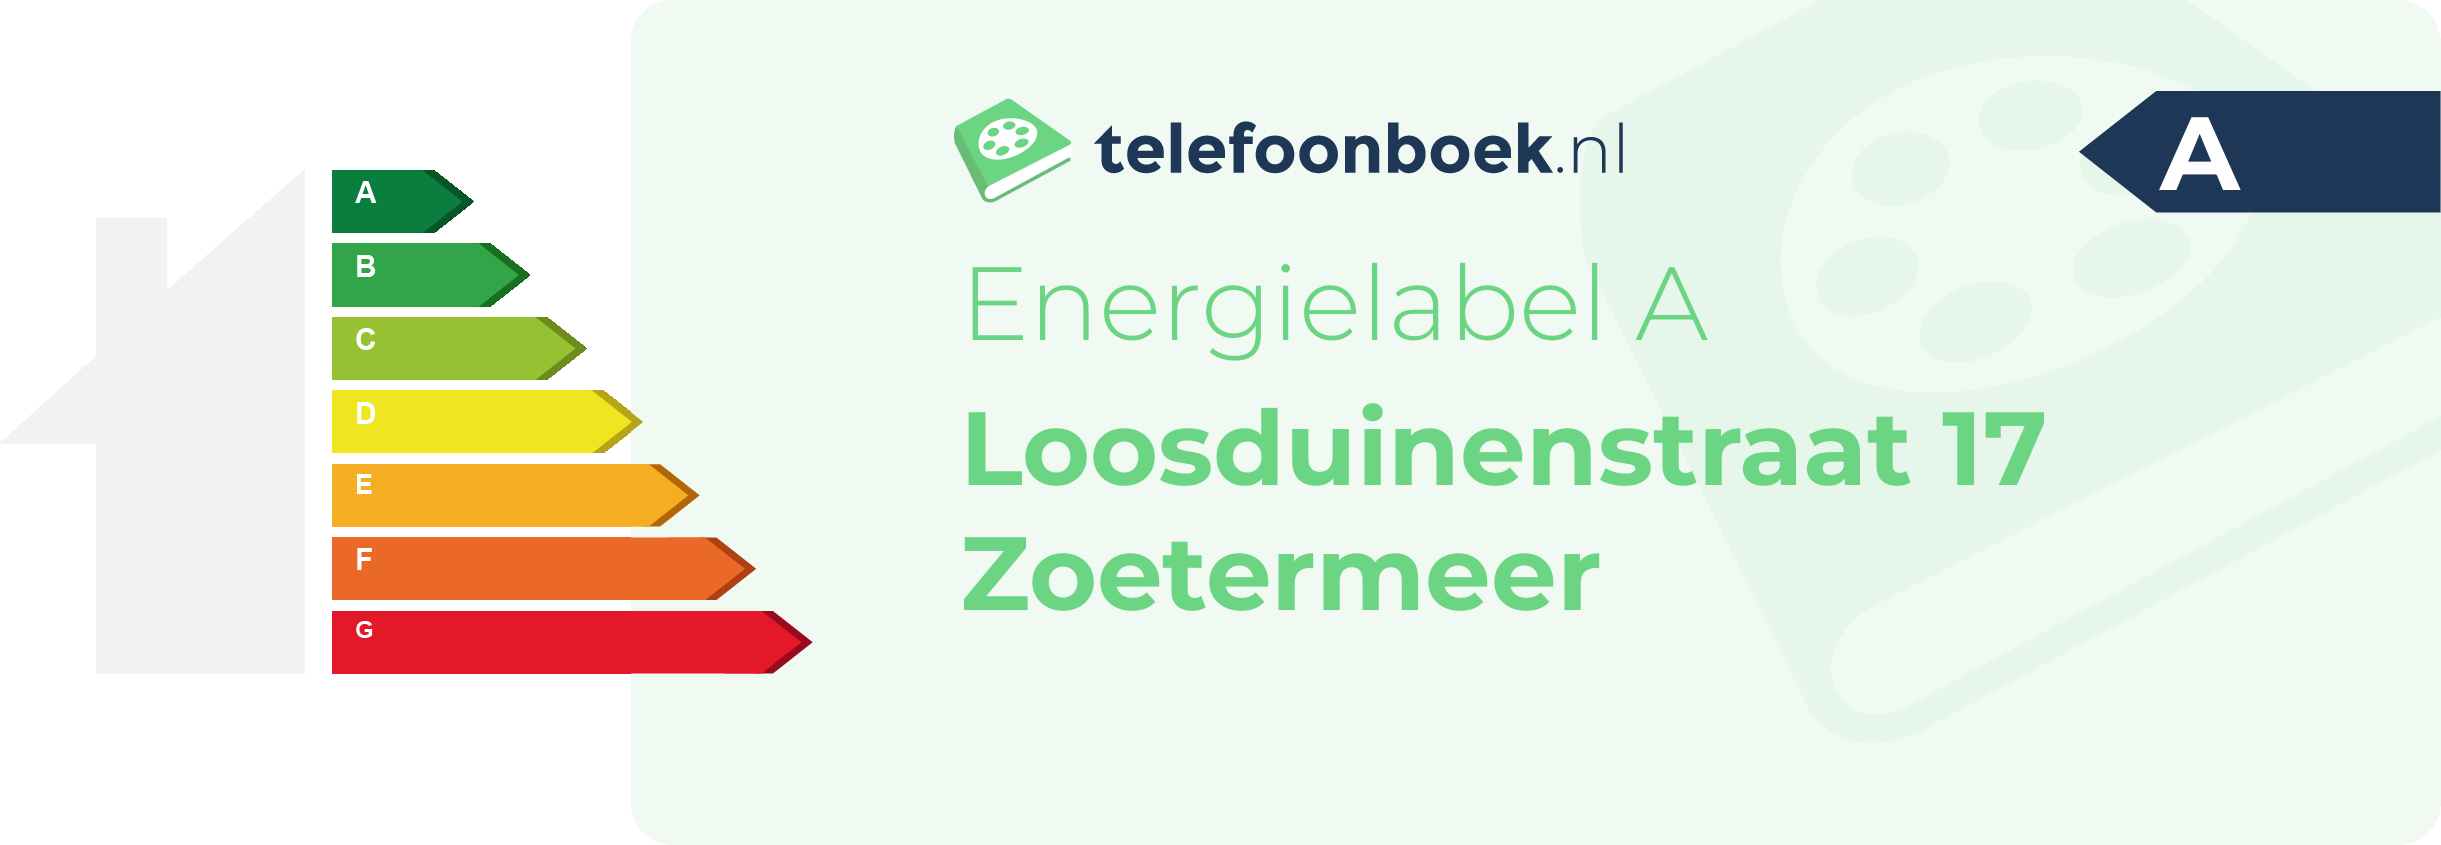 Energielabel Loosduinenstraat 17 Zoetermeer